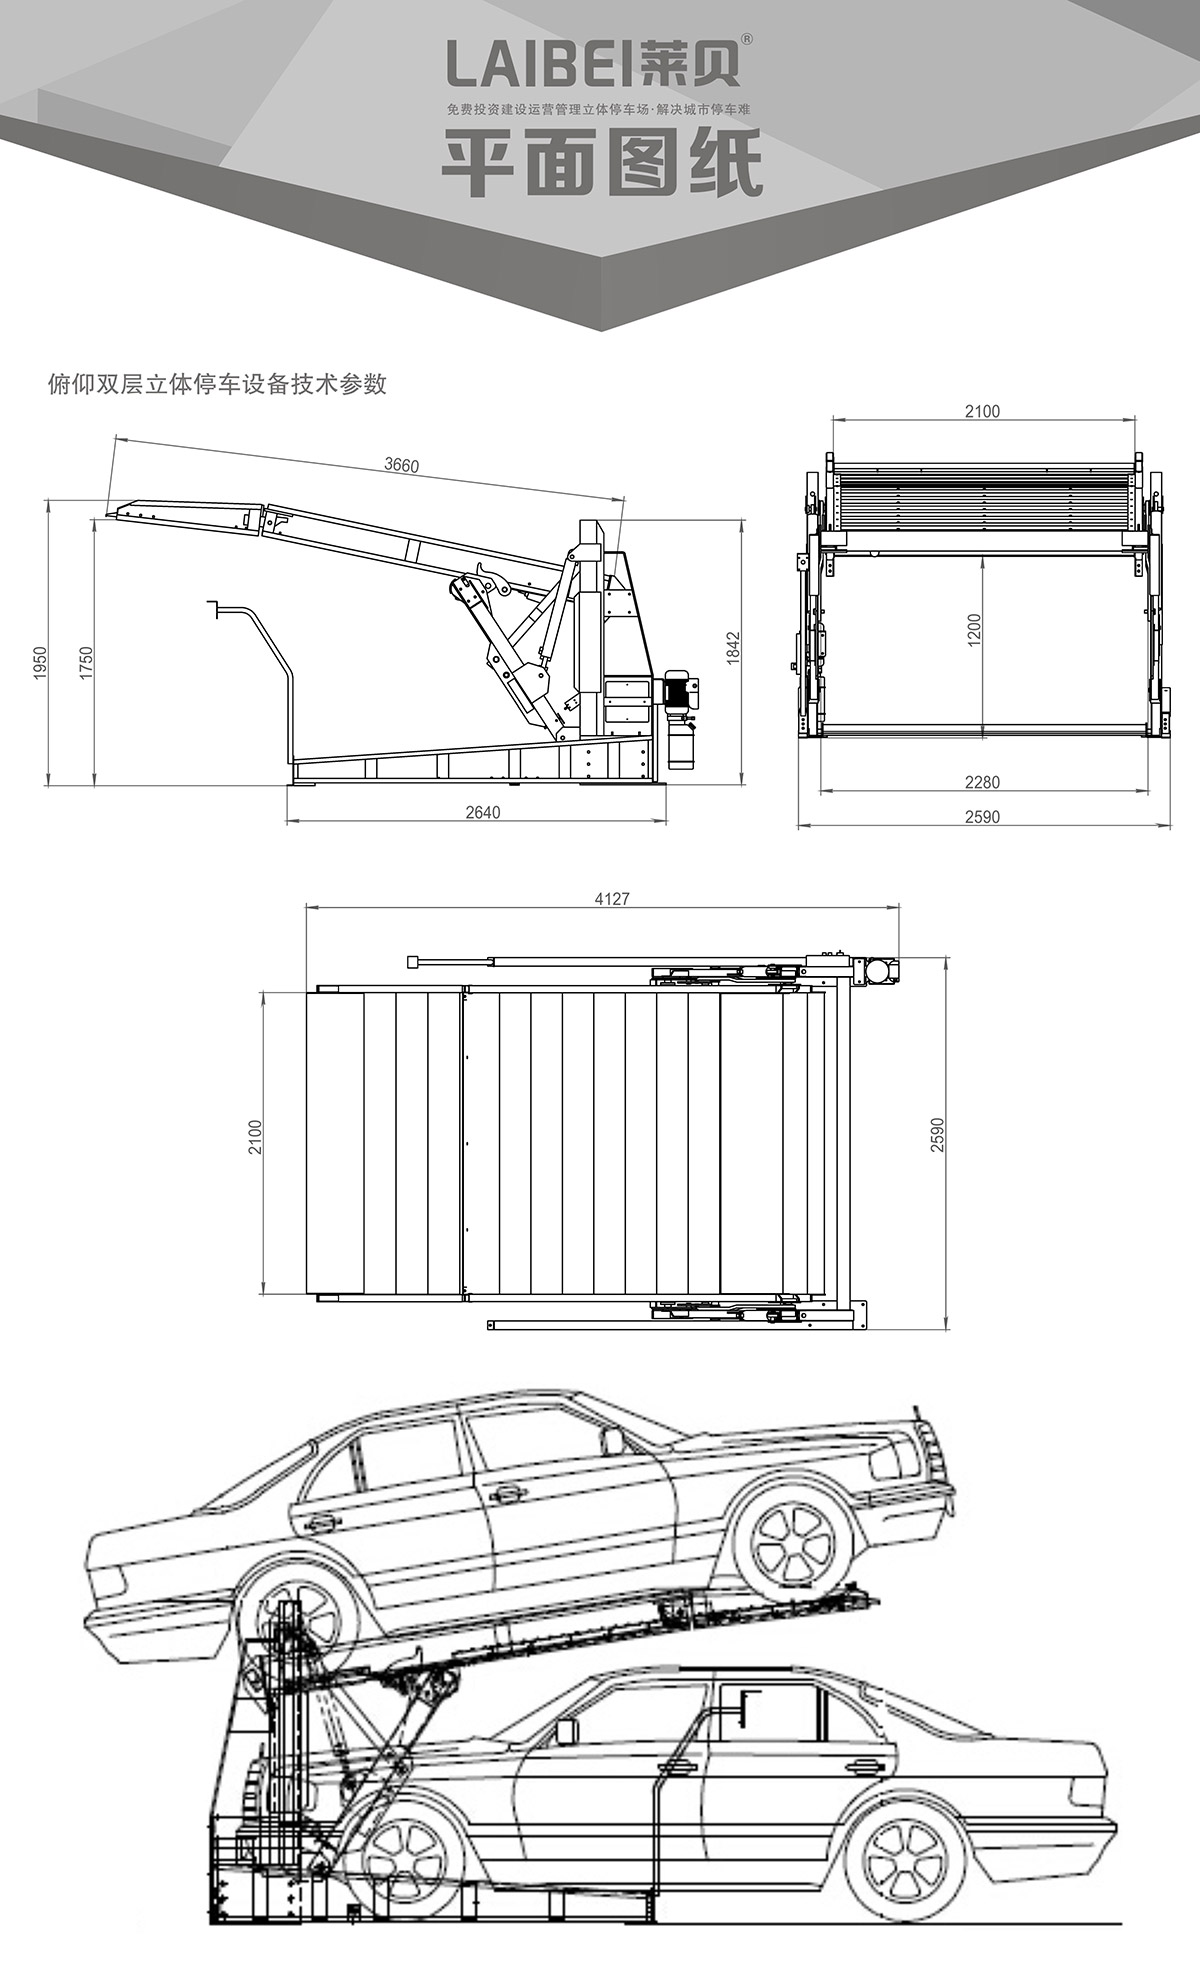 机械立体停车PJS俯仰简易升降立体停车平面图纸.jpg